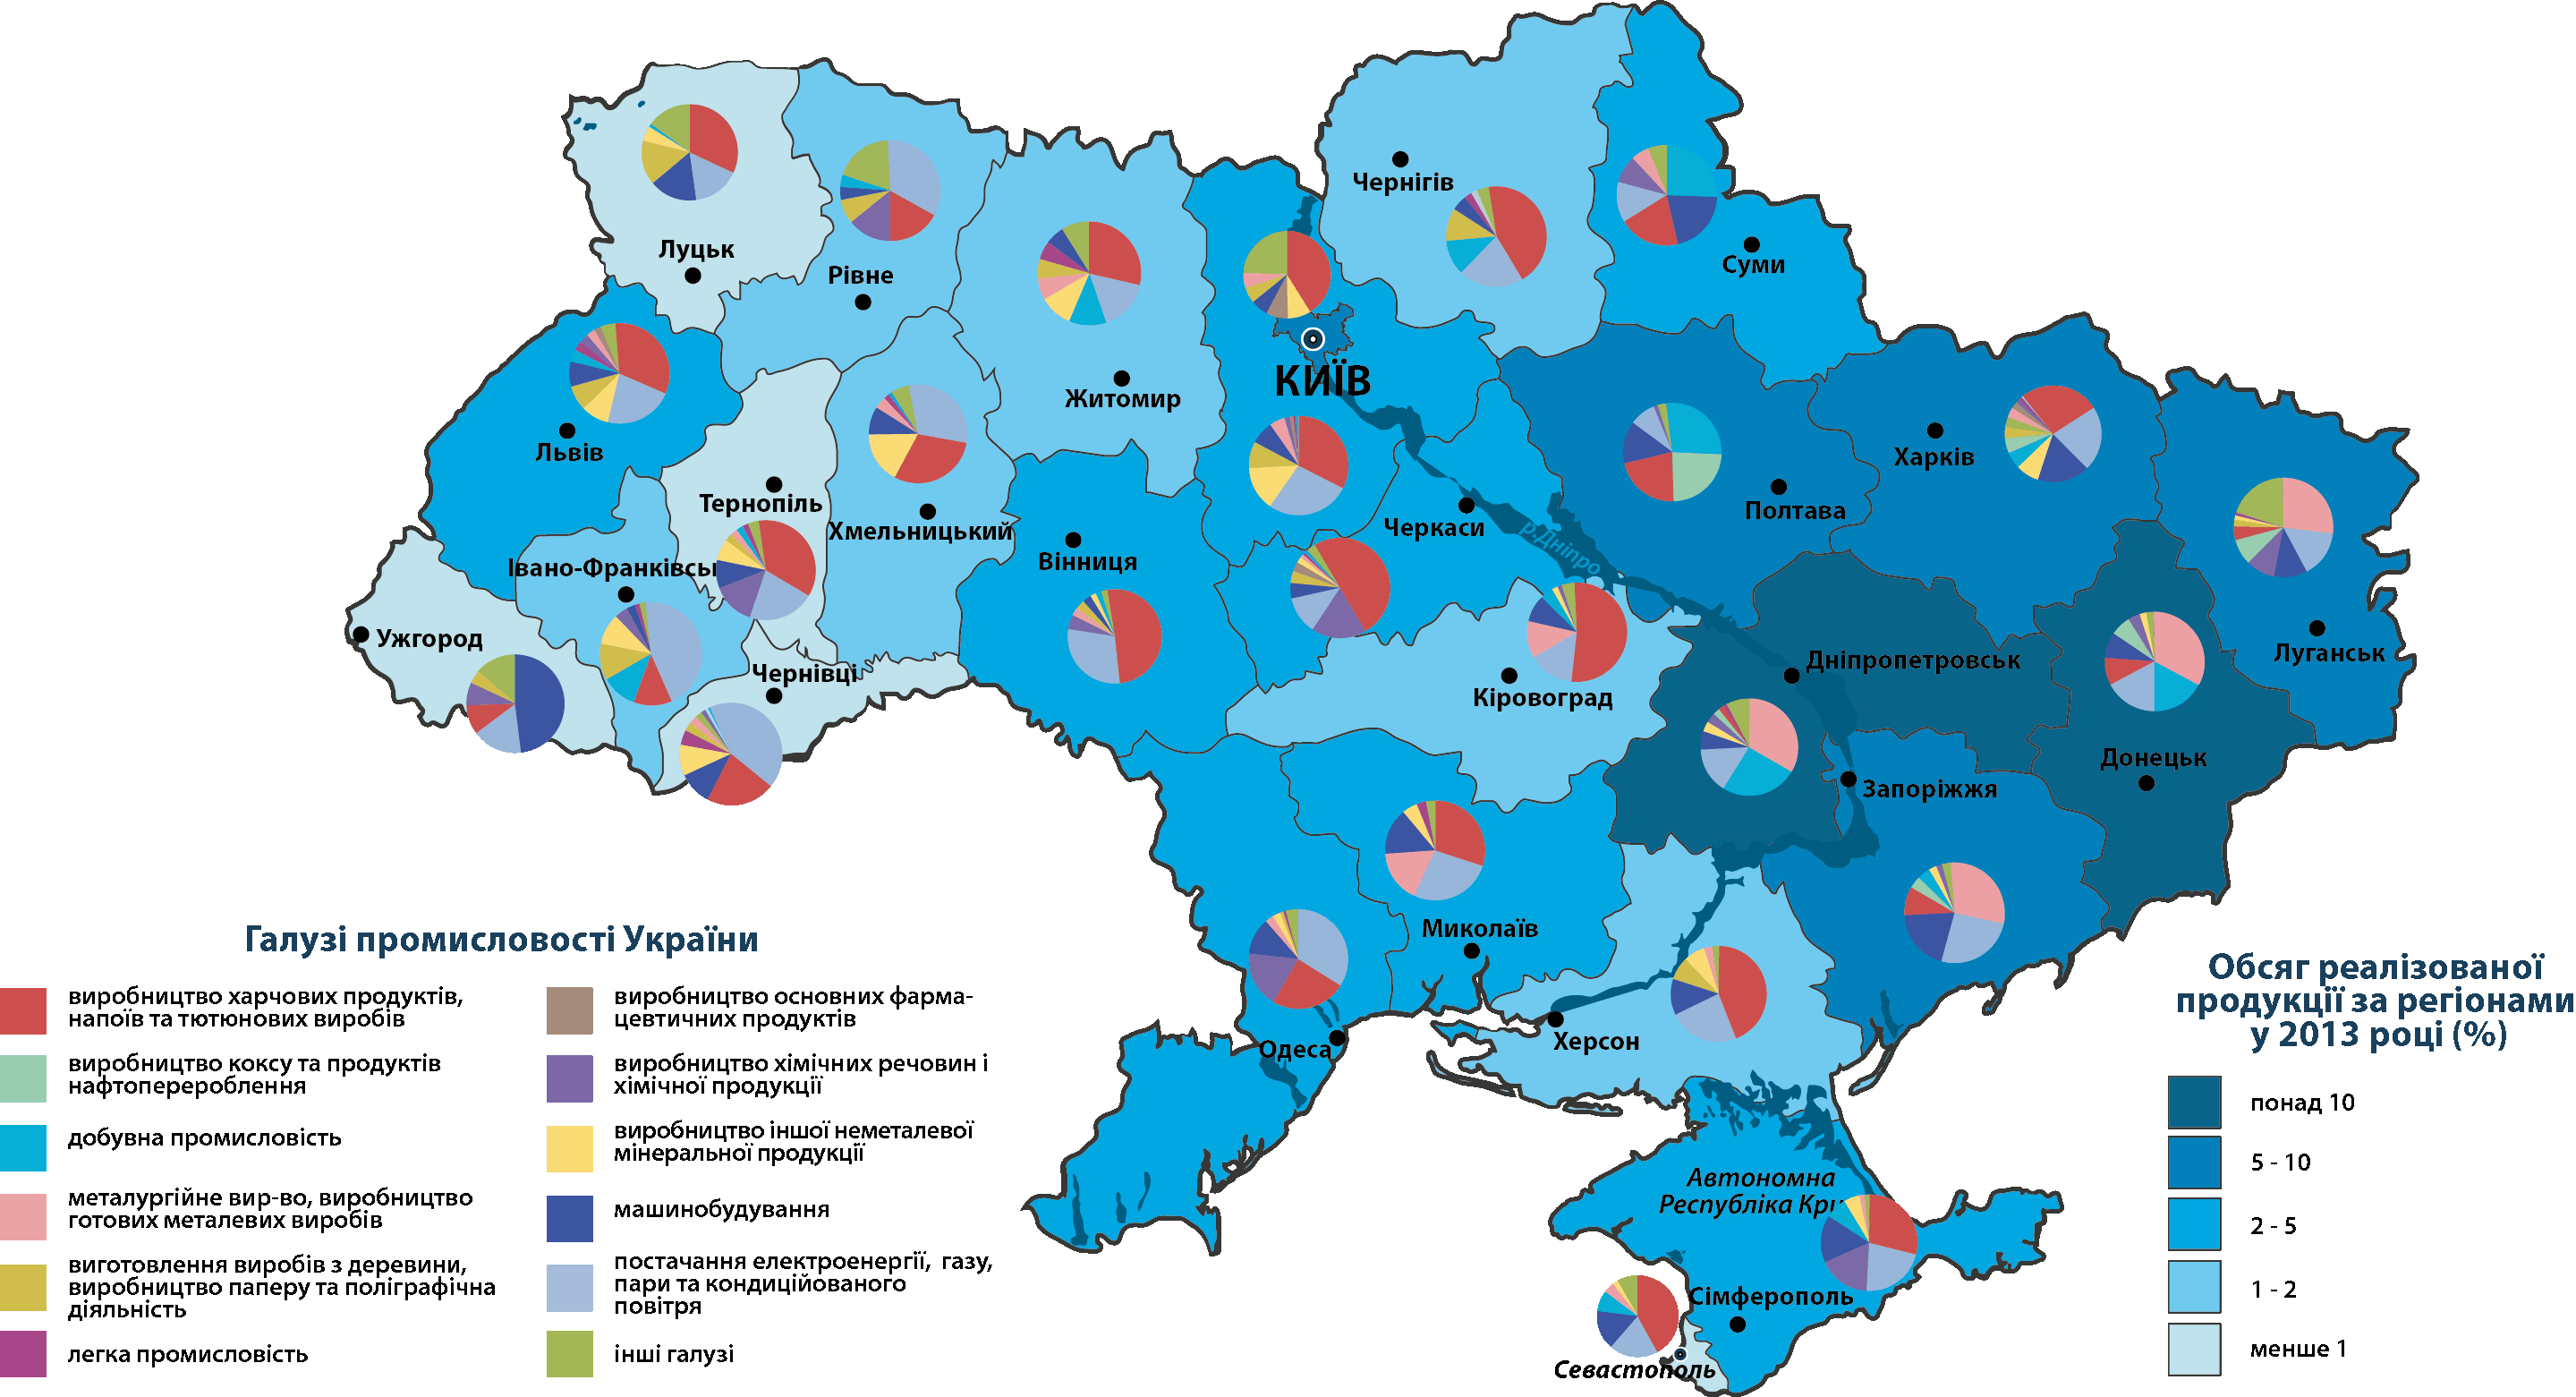 Отрасли промышленности Украины по областям